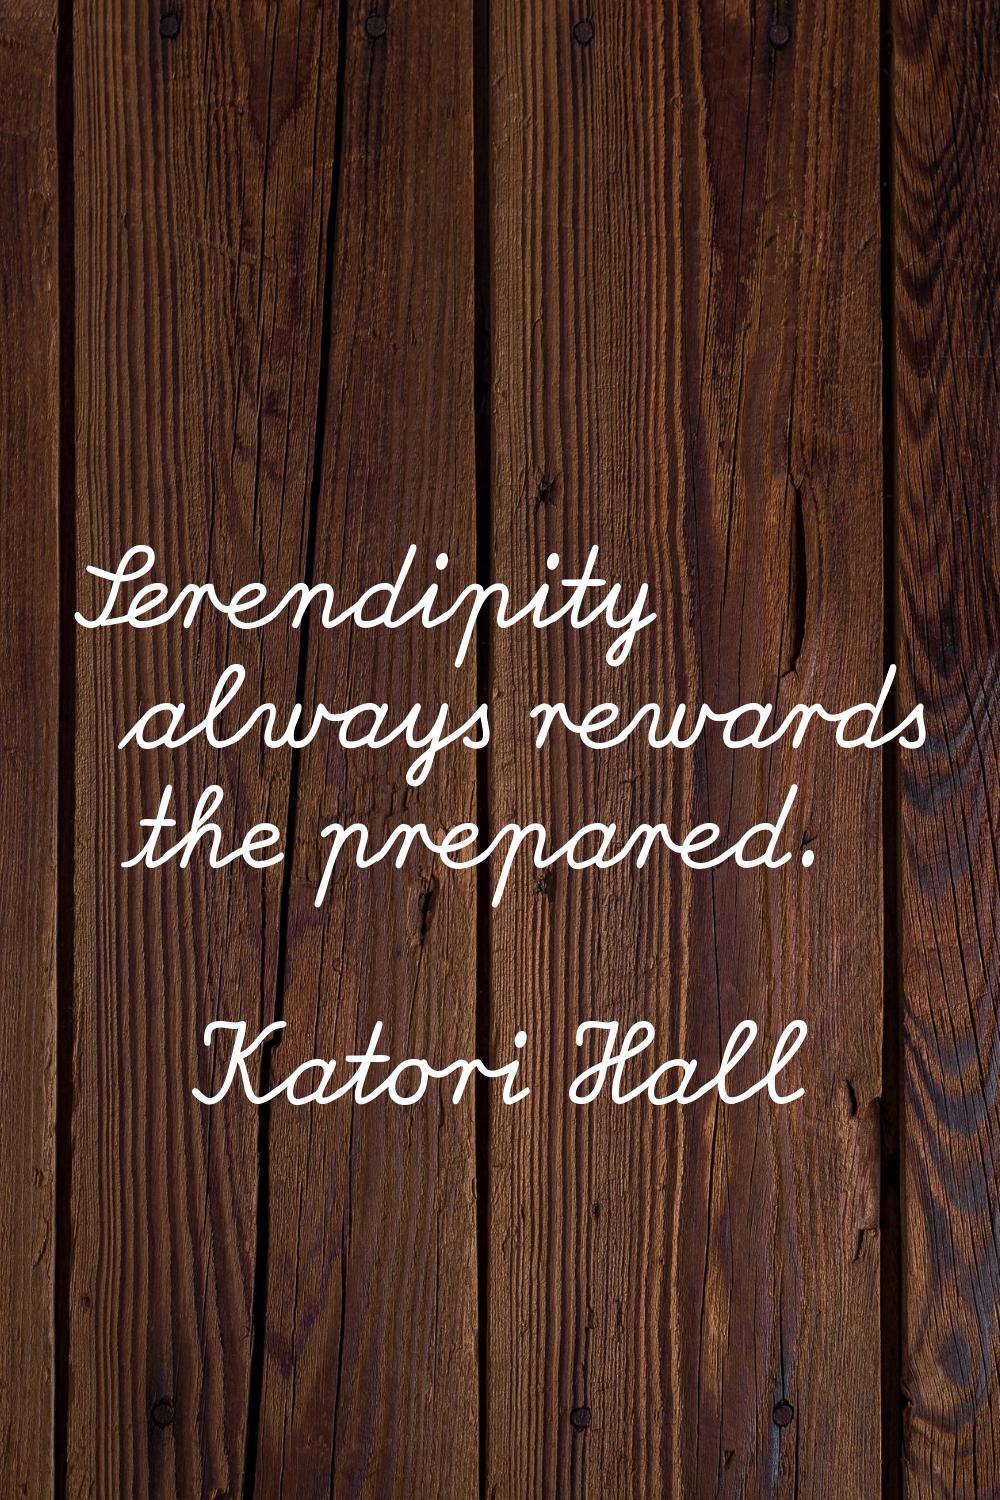 Serendipity always rewards the prepared.